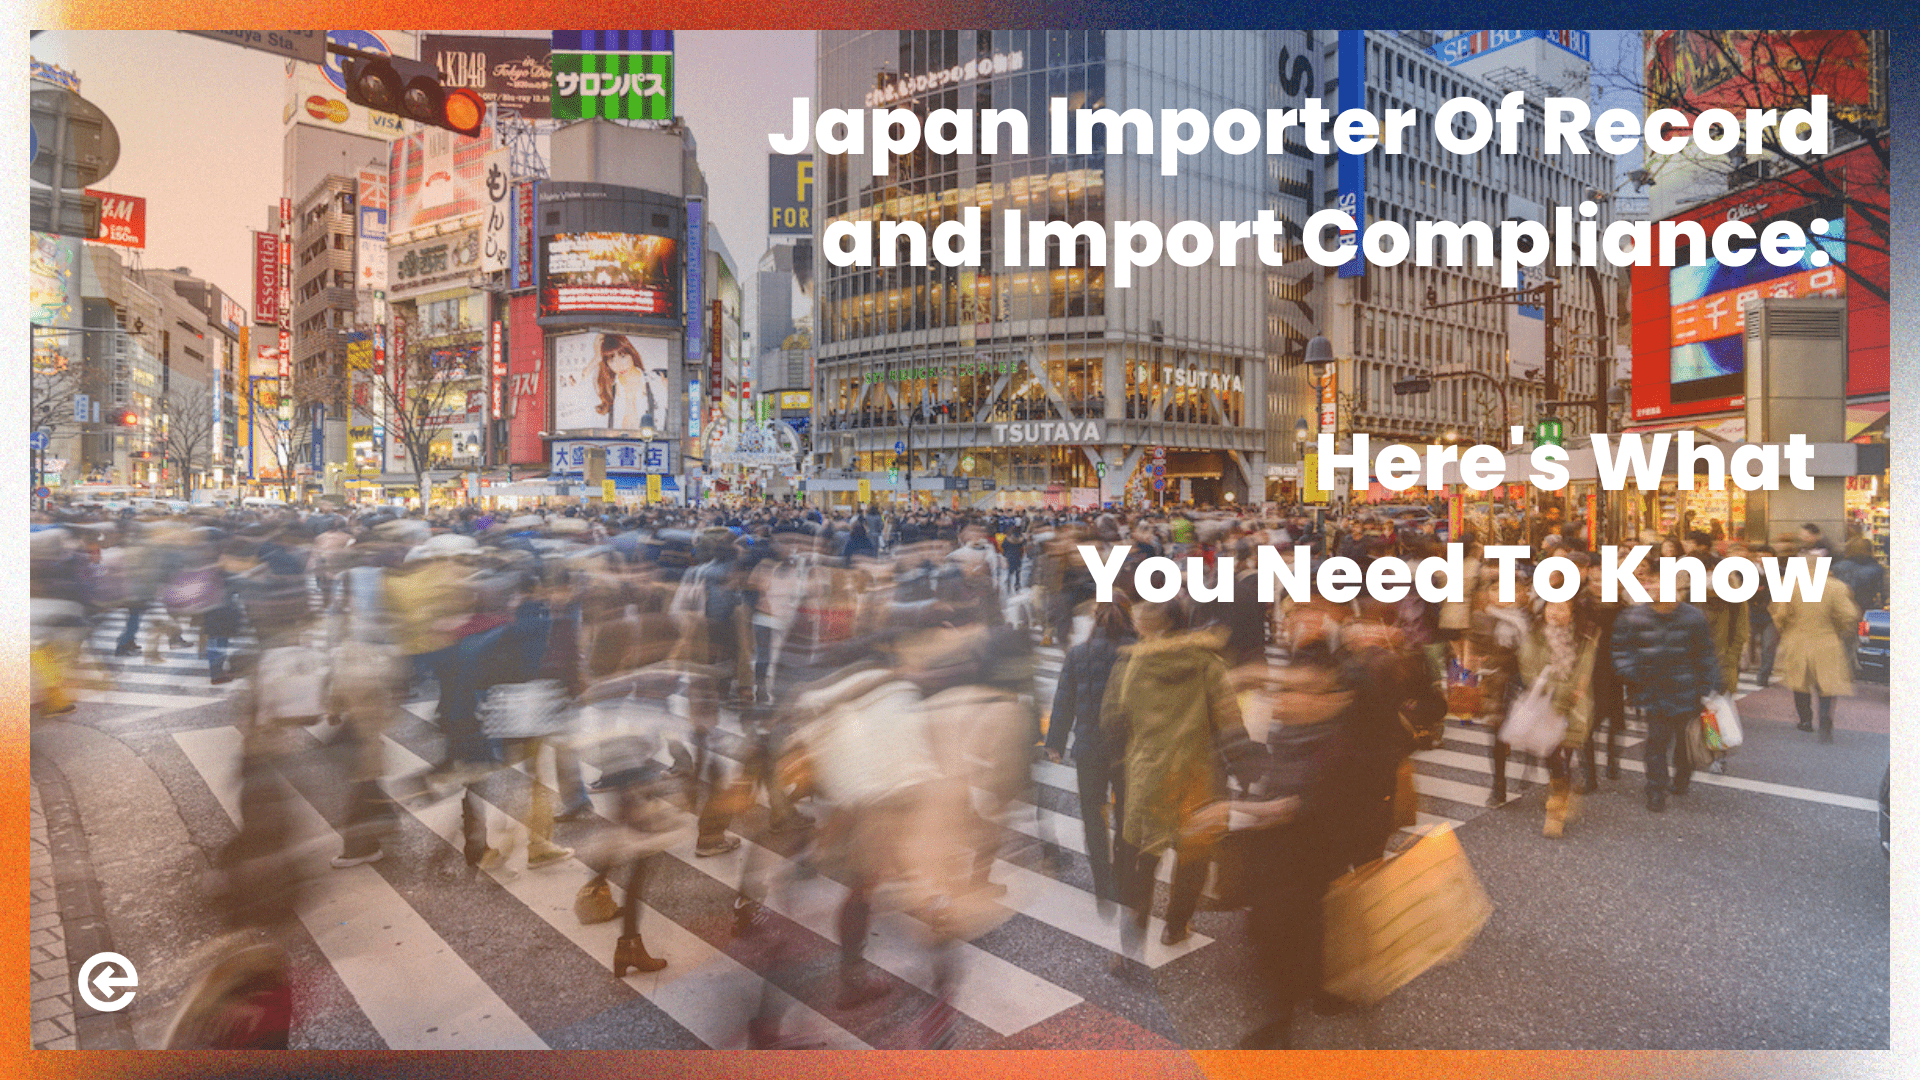 रिकॉर्ड और आयात अनुपालन के जापान आयातक: यहां आपको क्या पता होना चाहिए